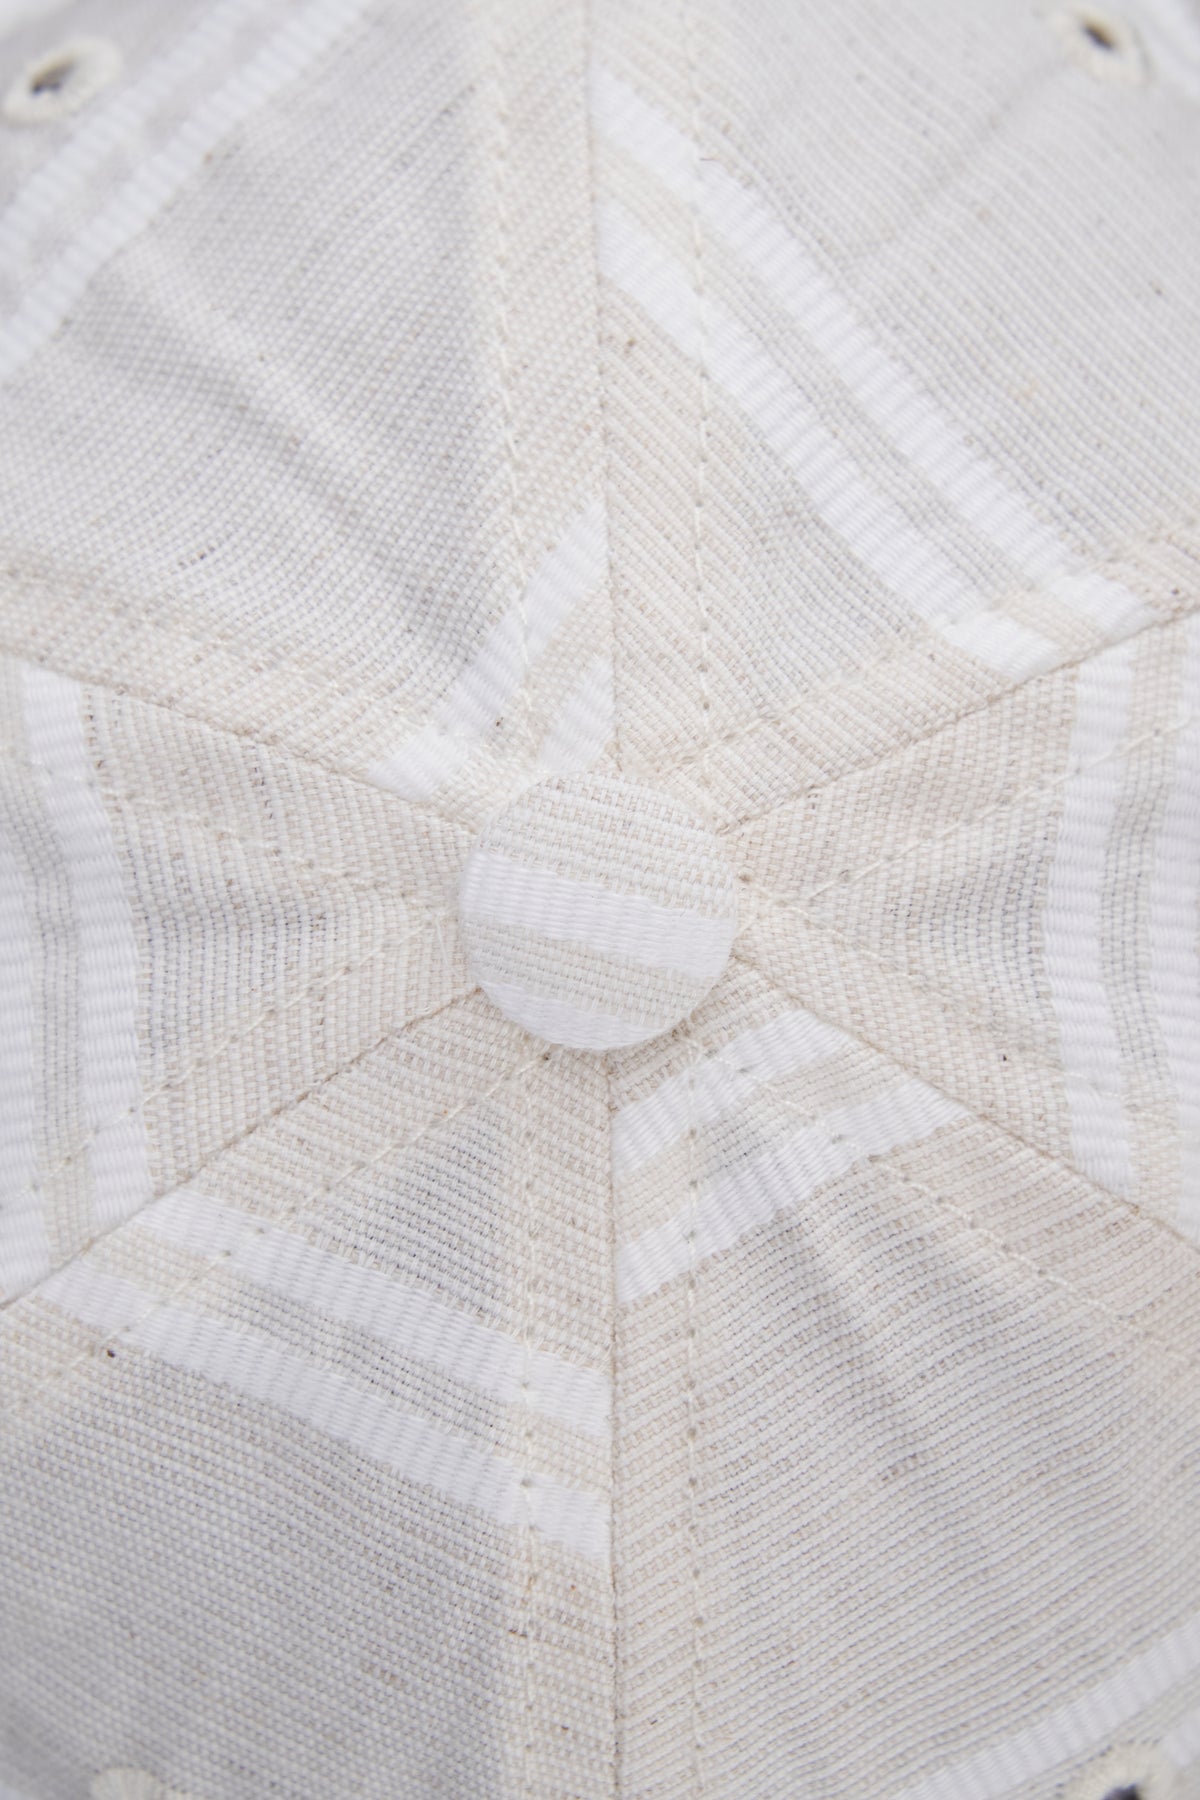 6-Panel Cap - Japanese Linen - BALLPARK WHITE STRIPE